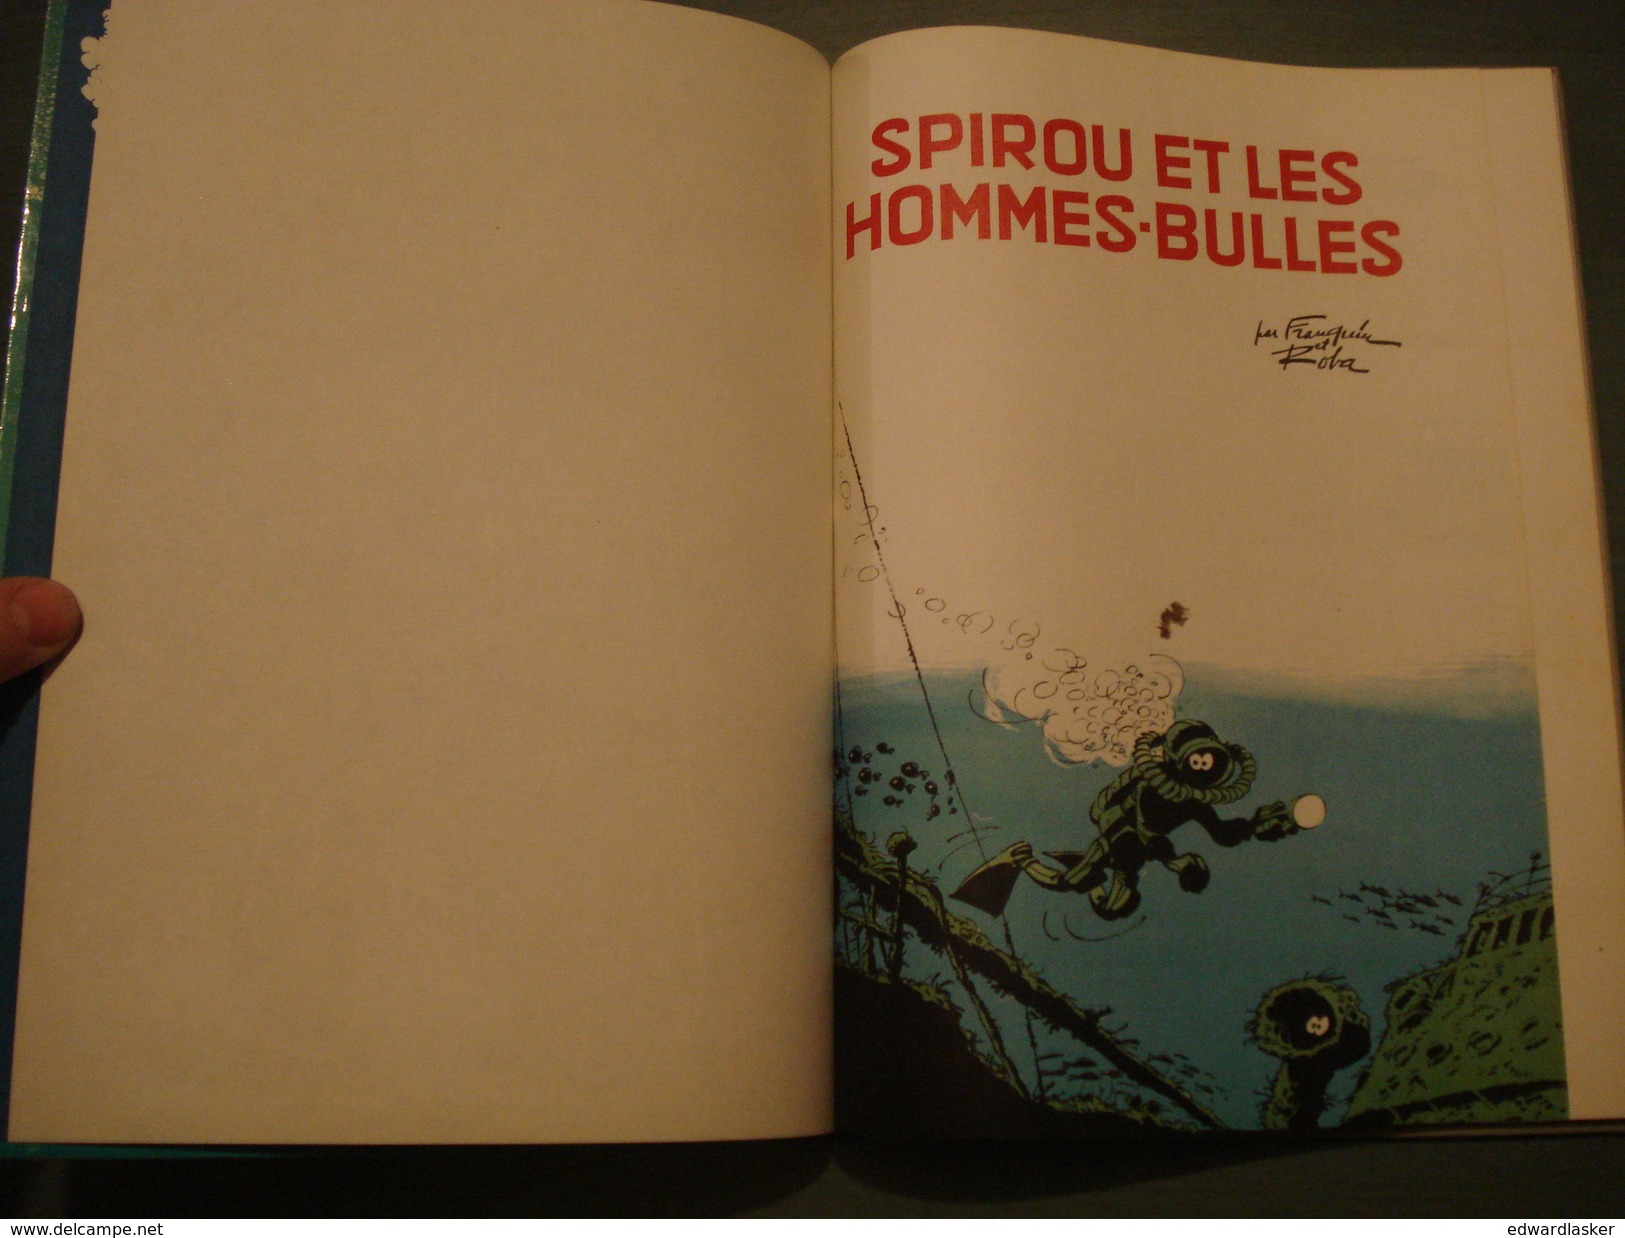 SPIROU ET FANTASIO 17 : Spirou Et Les Hommes-Bulles - Réimpression De 1968 - TBE - Spirou Et Fantasio